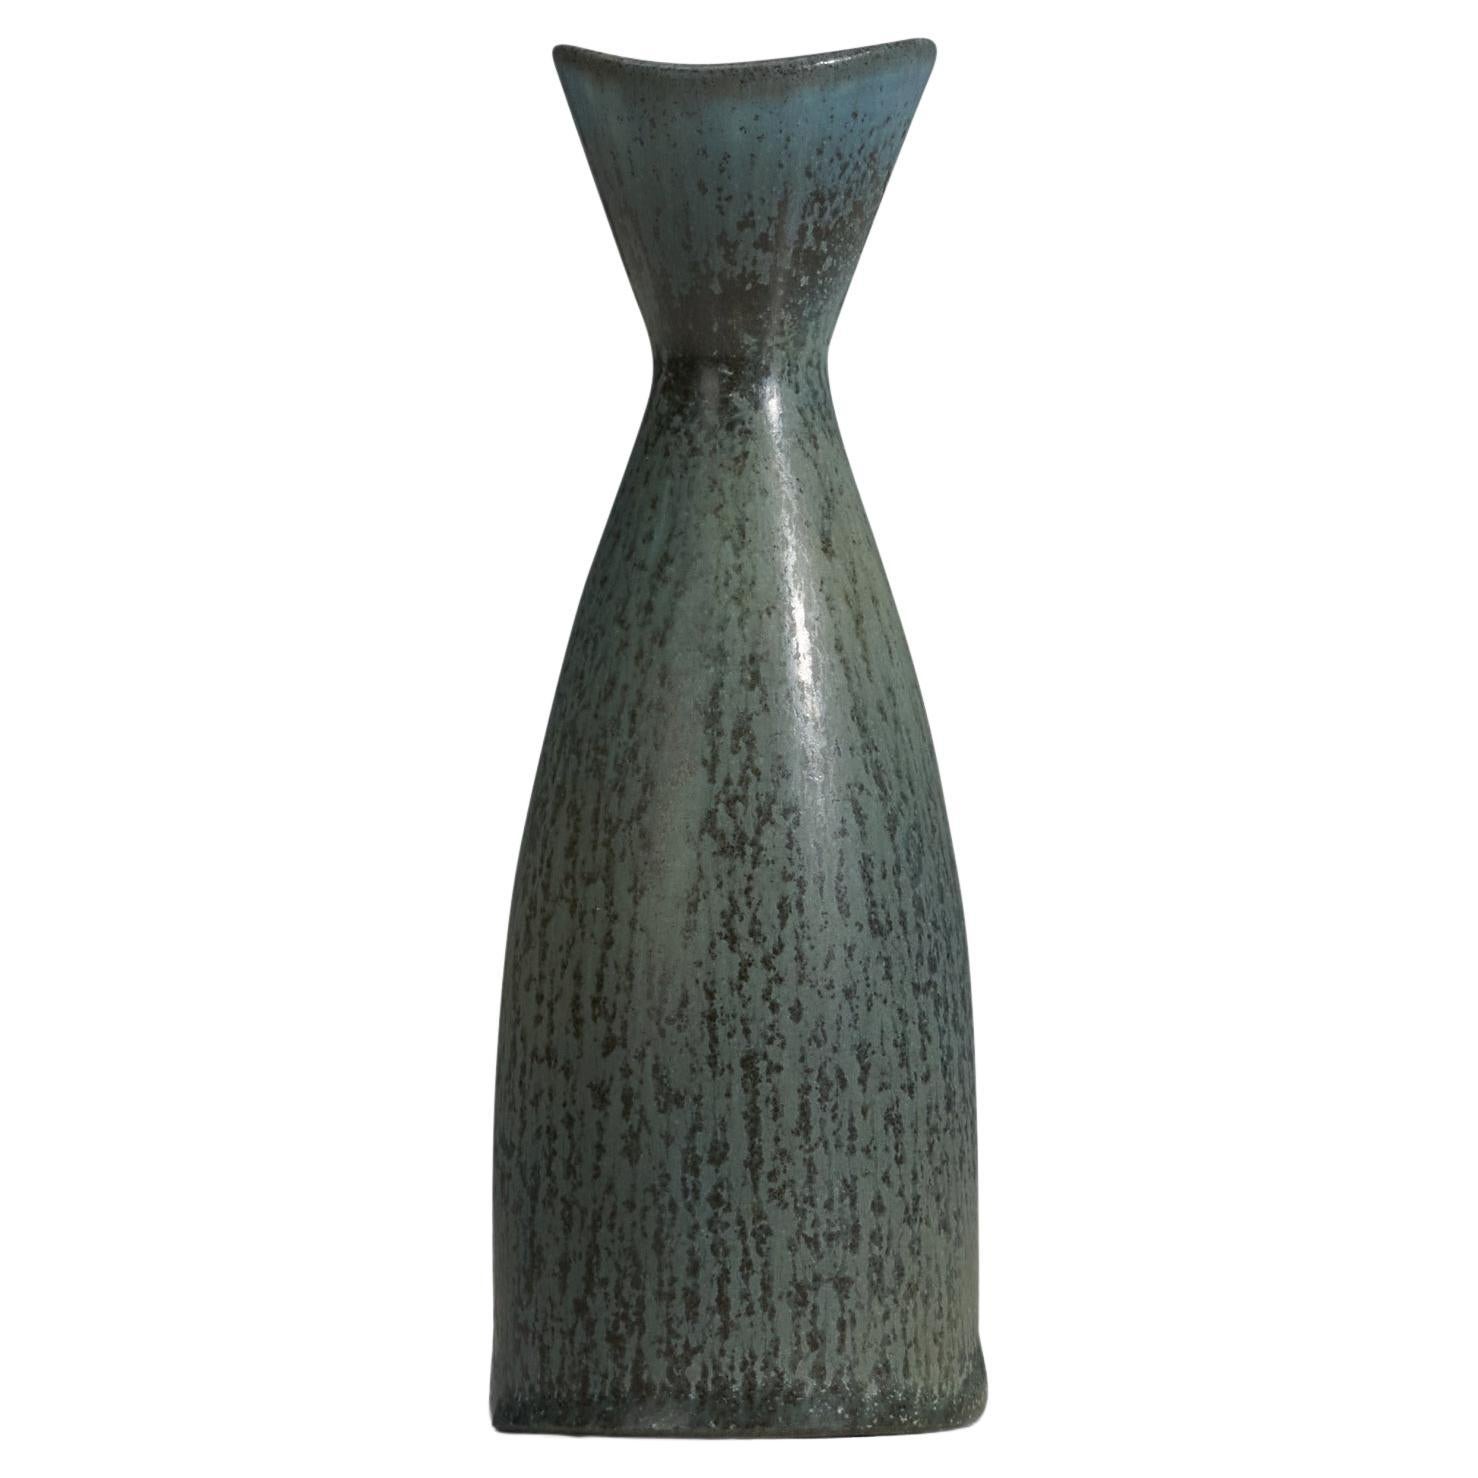 Carl-Harry Stålhane, Vase, Green Glazed Stoneware, Rörstrand, Sweden, 1960s For Sale